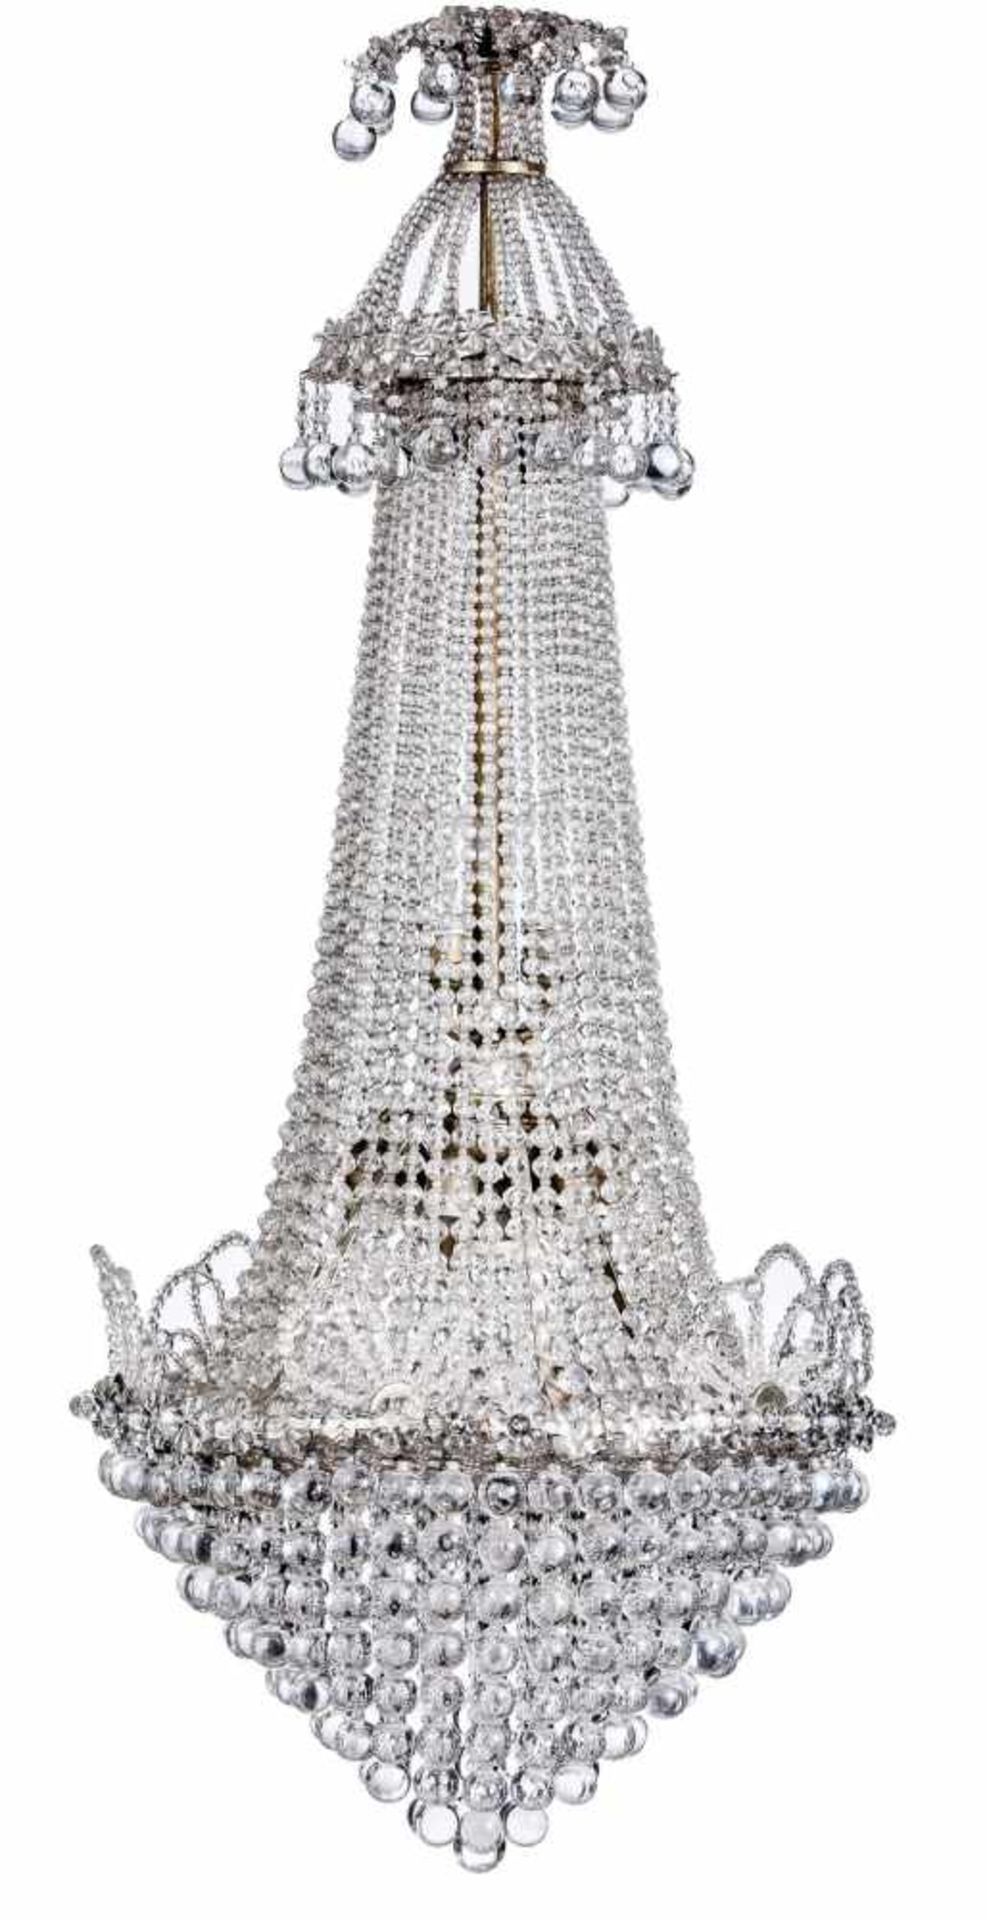 Kristallüster im EmpirestilUm 1900/20Tropfenform mit dicht gehängten Perlschnüren und Kugeln um